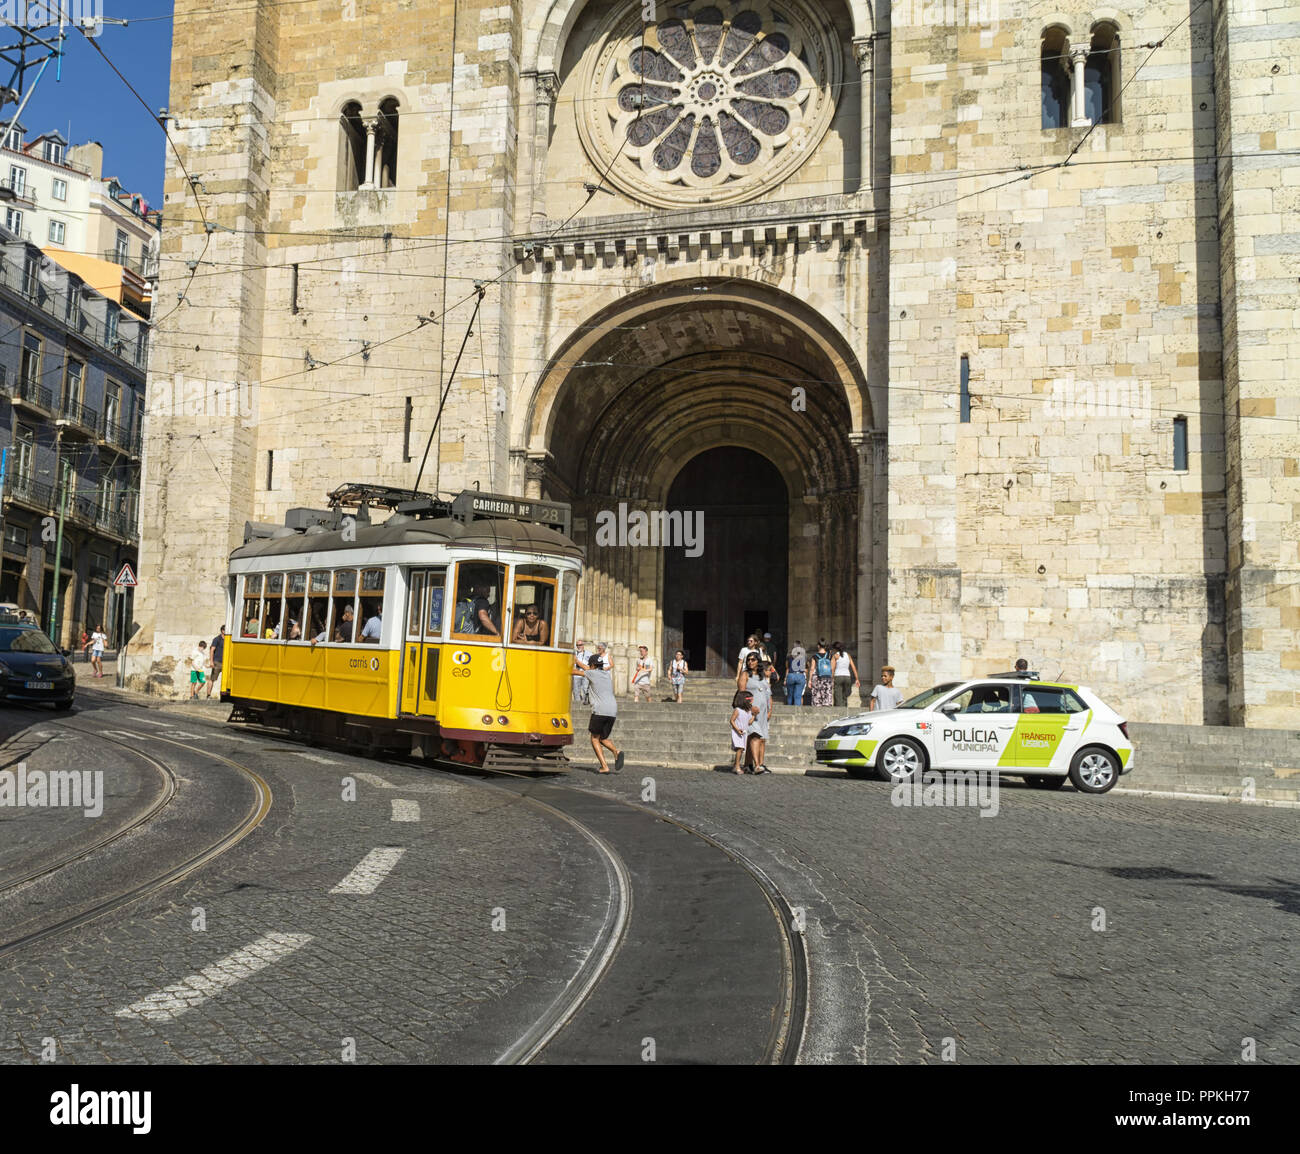 Lisbonne, Portugal - 31 août 2018 : la ligne de tramway 28 jaune en face de la Cathédrale Se ; un garçon non identifié saute sur un tramway. Banque D'Images